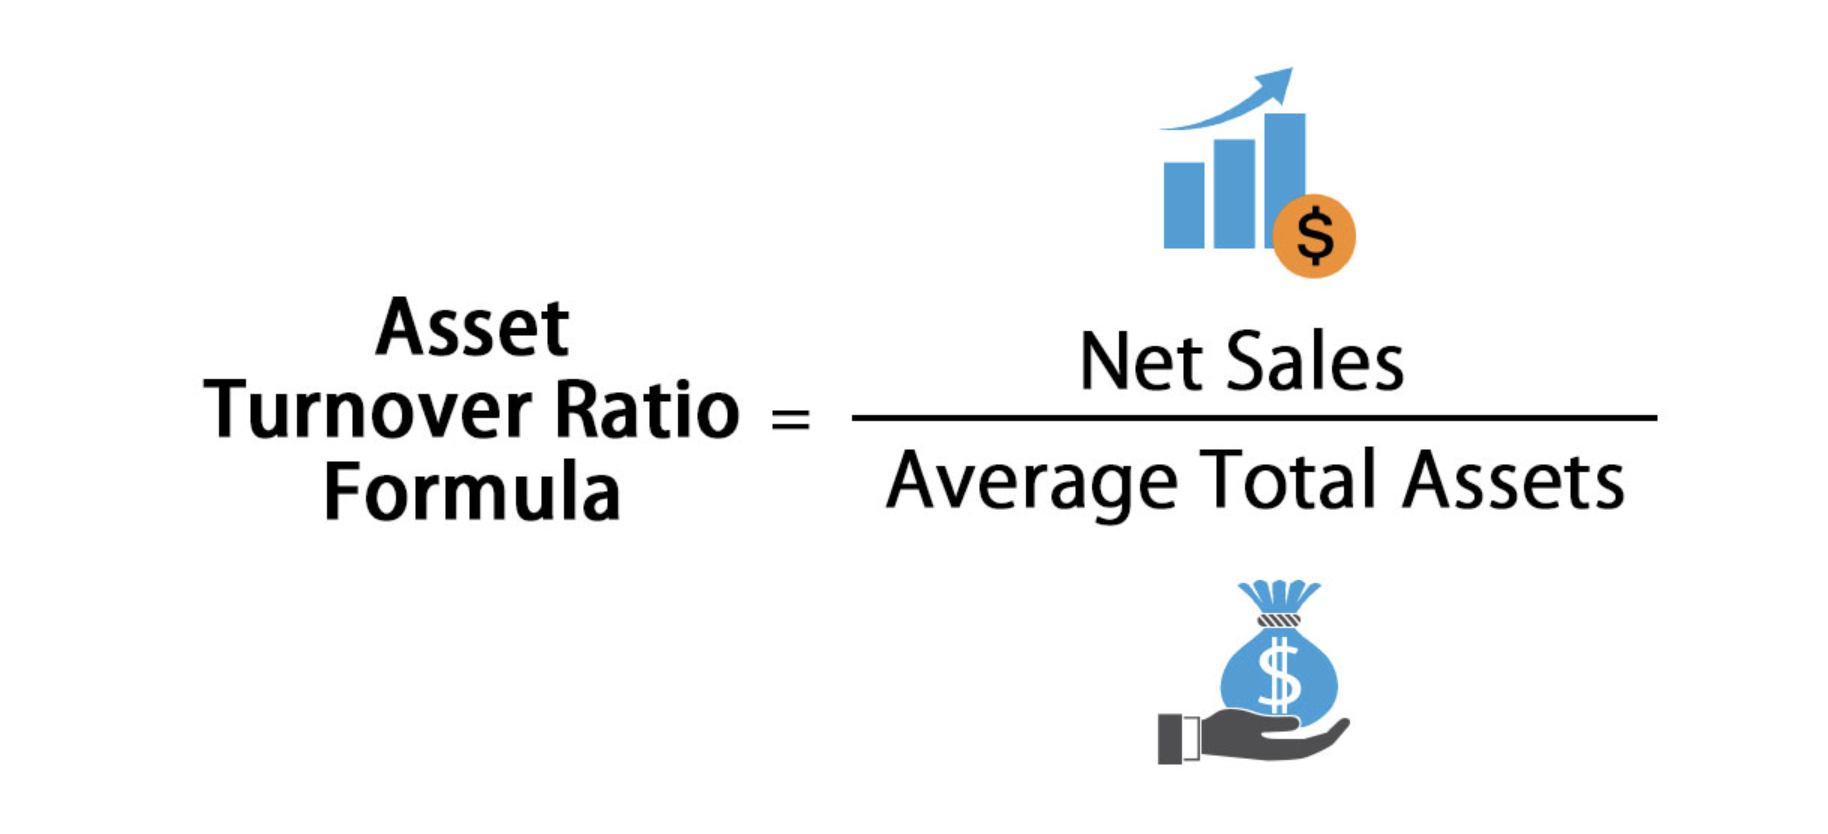 Asset Turnover Ratio Formula = Net Sales / Average Total Assets.